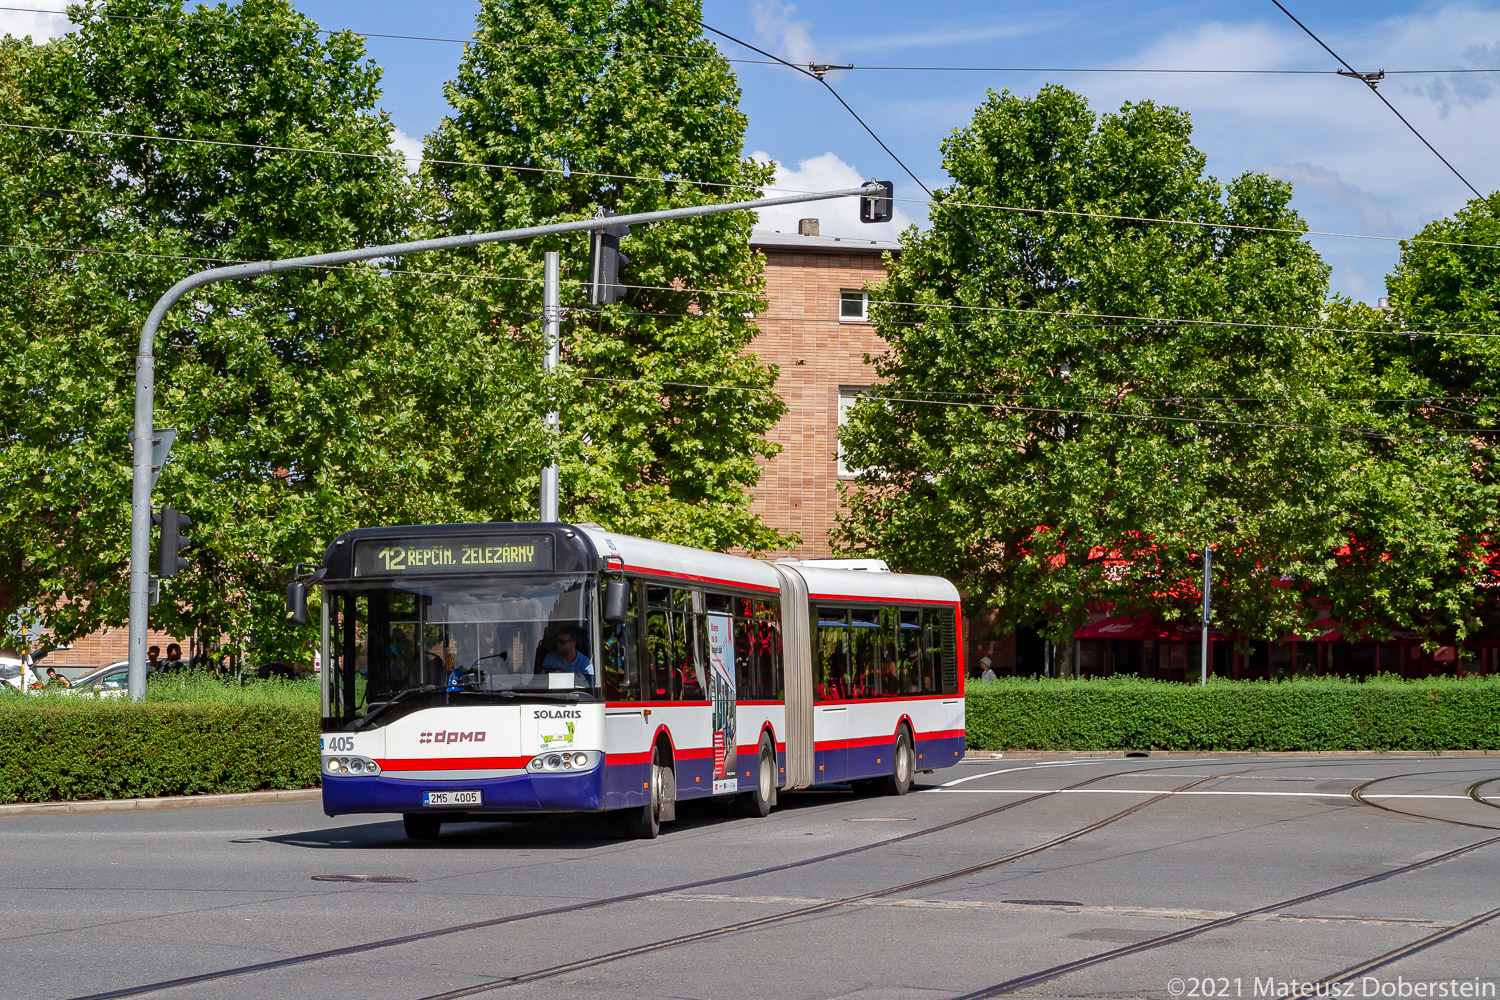 Olomouc, Solaris Urbino II 18 № 405